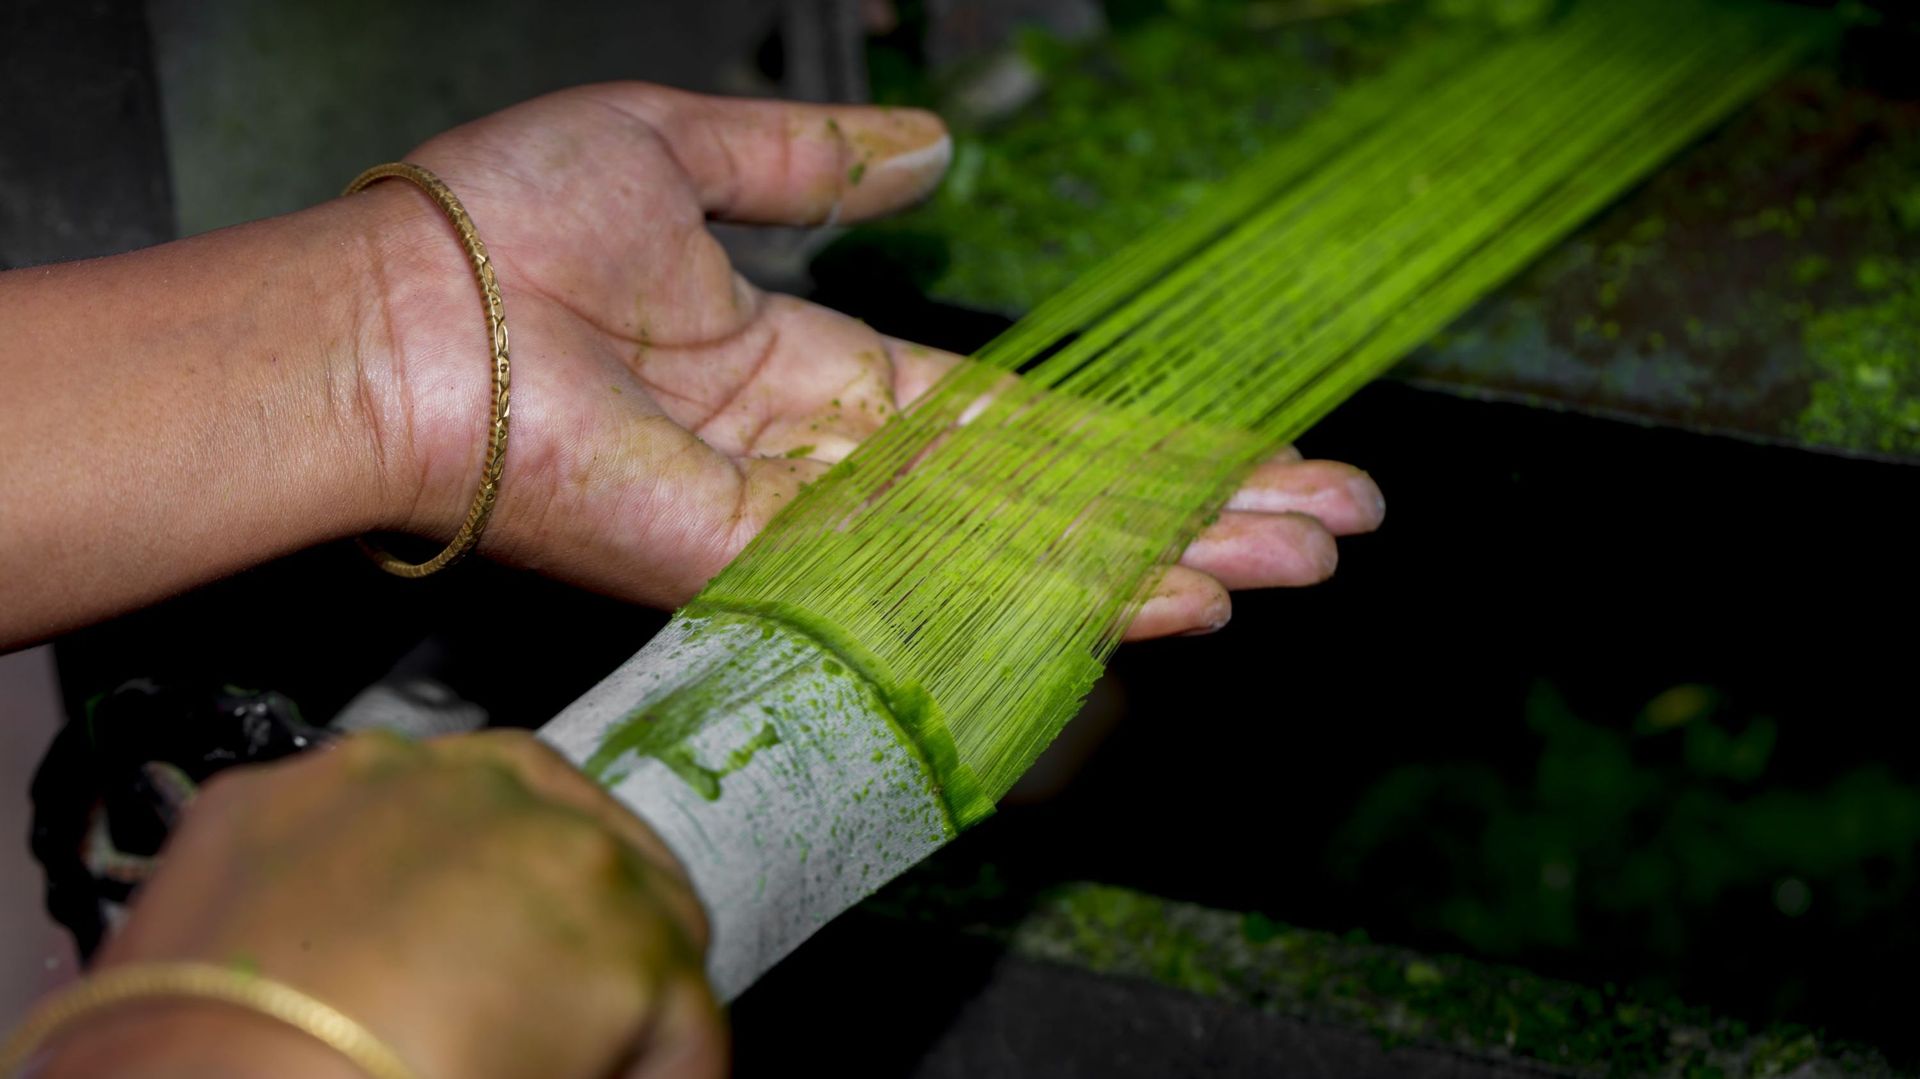 Les fibres sont extraites des feuilles d'ananas